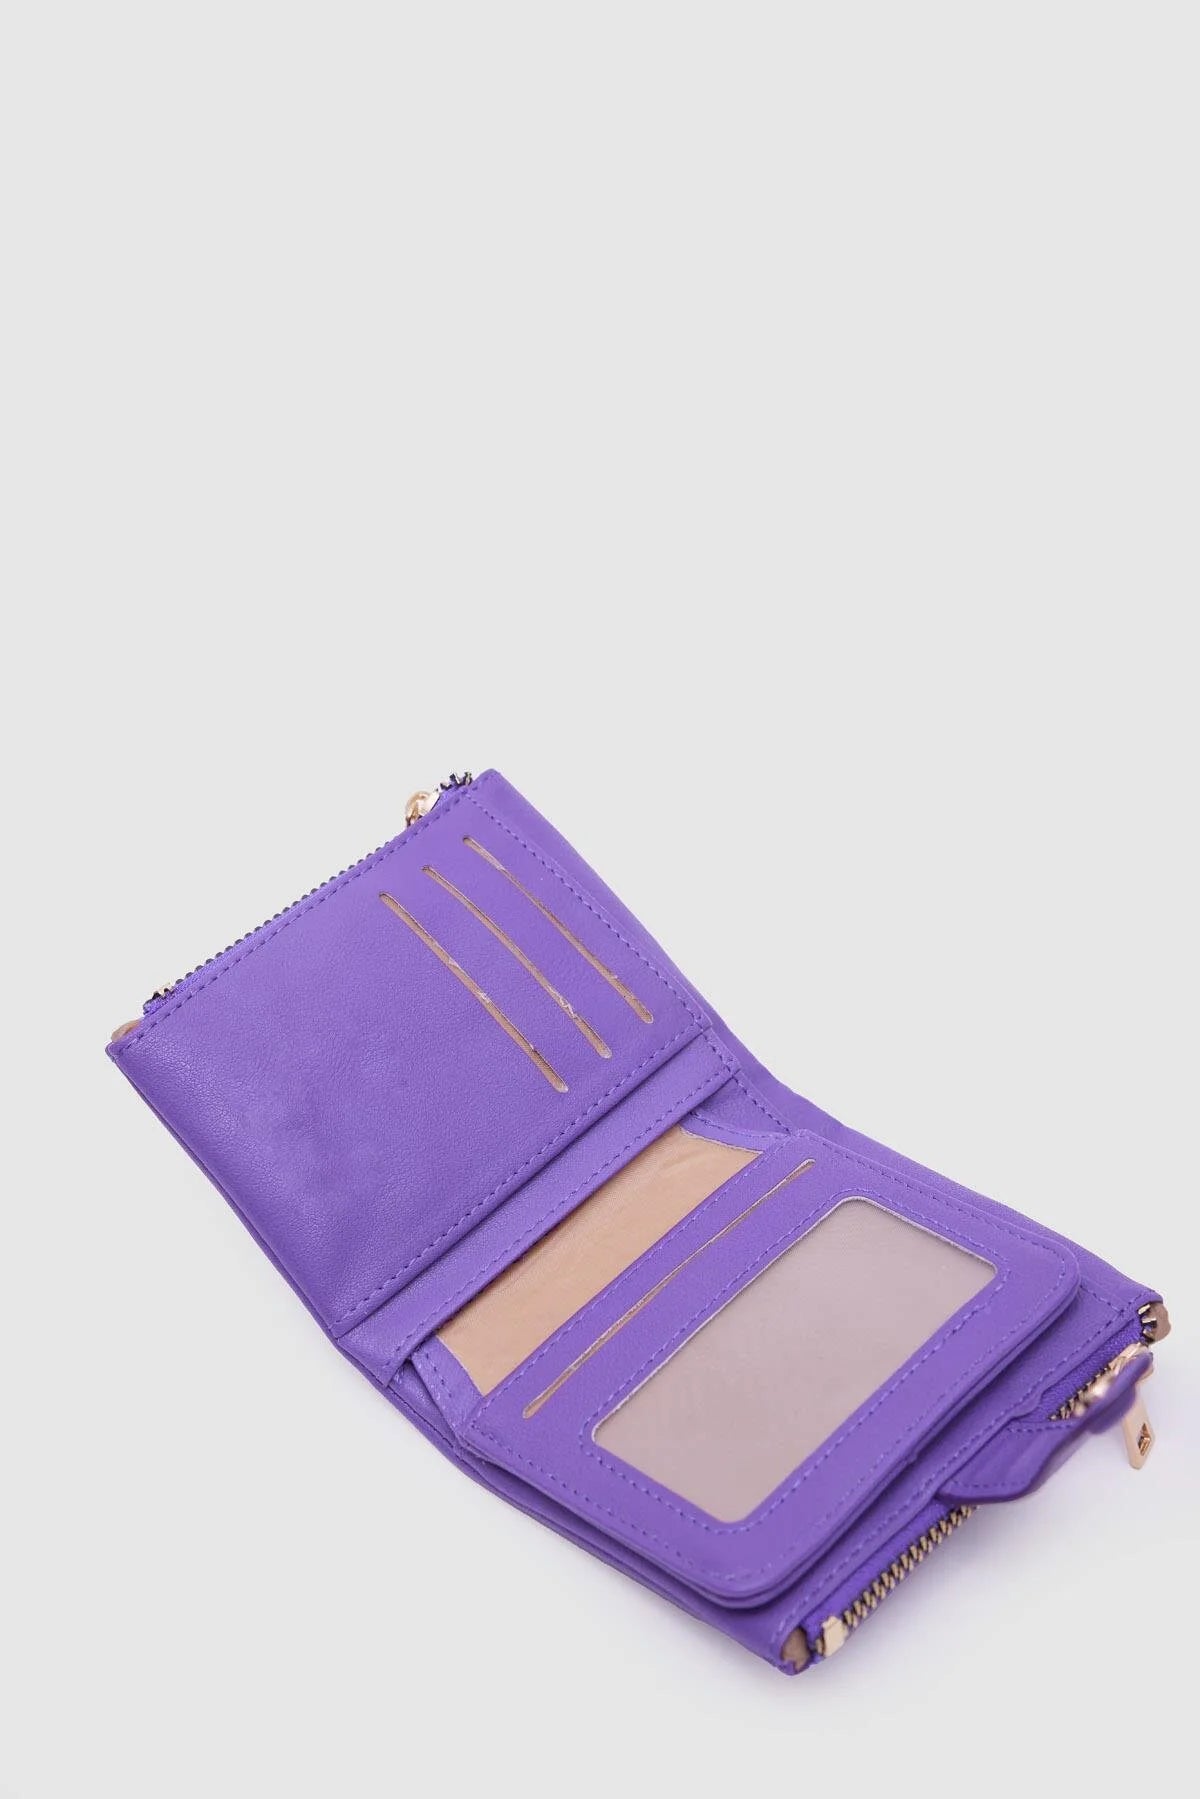 Soft Leather Purple Wallet wallet LUNARITY GARAGE   